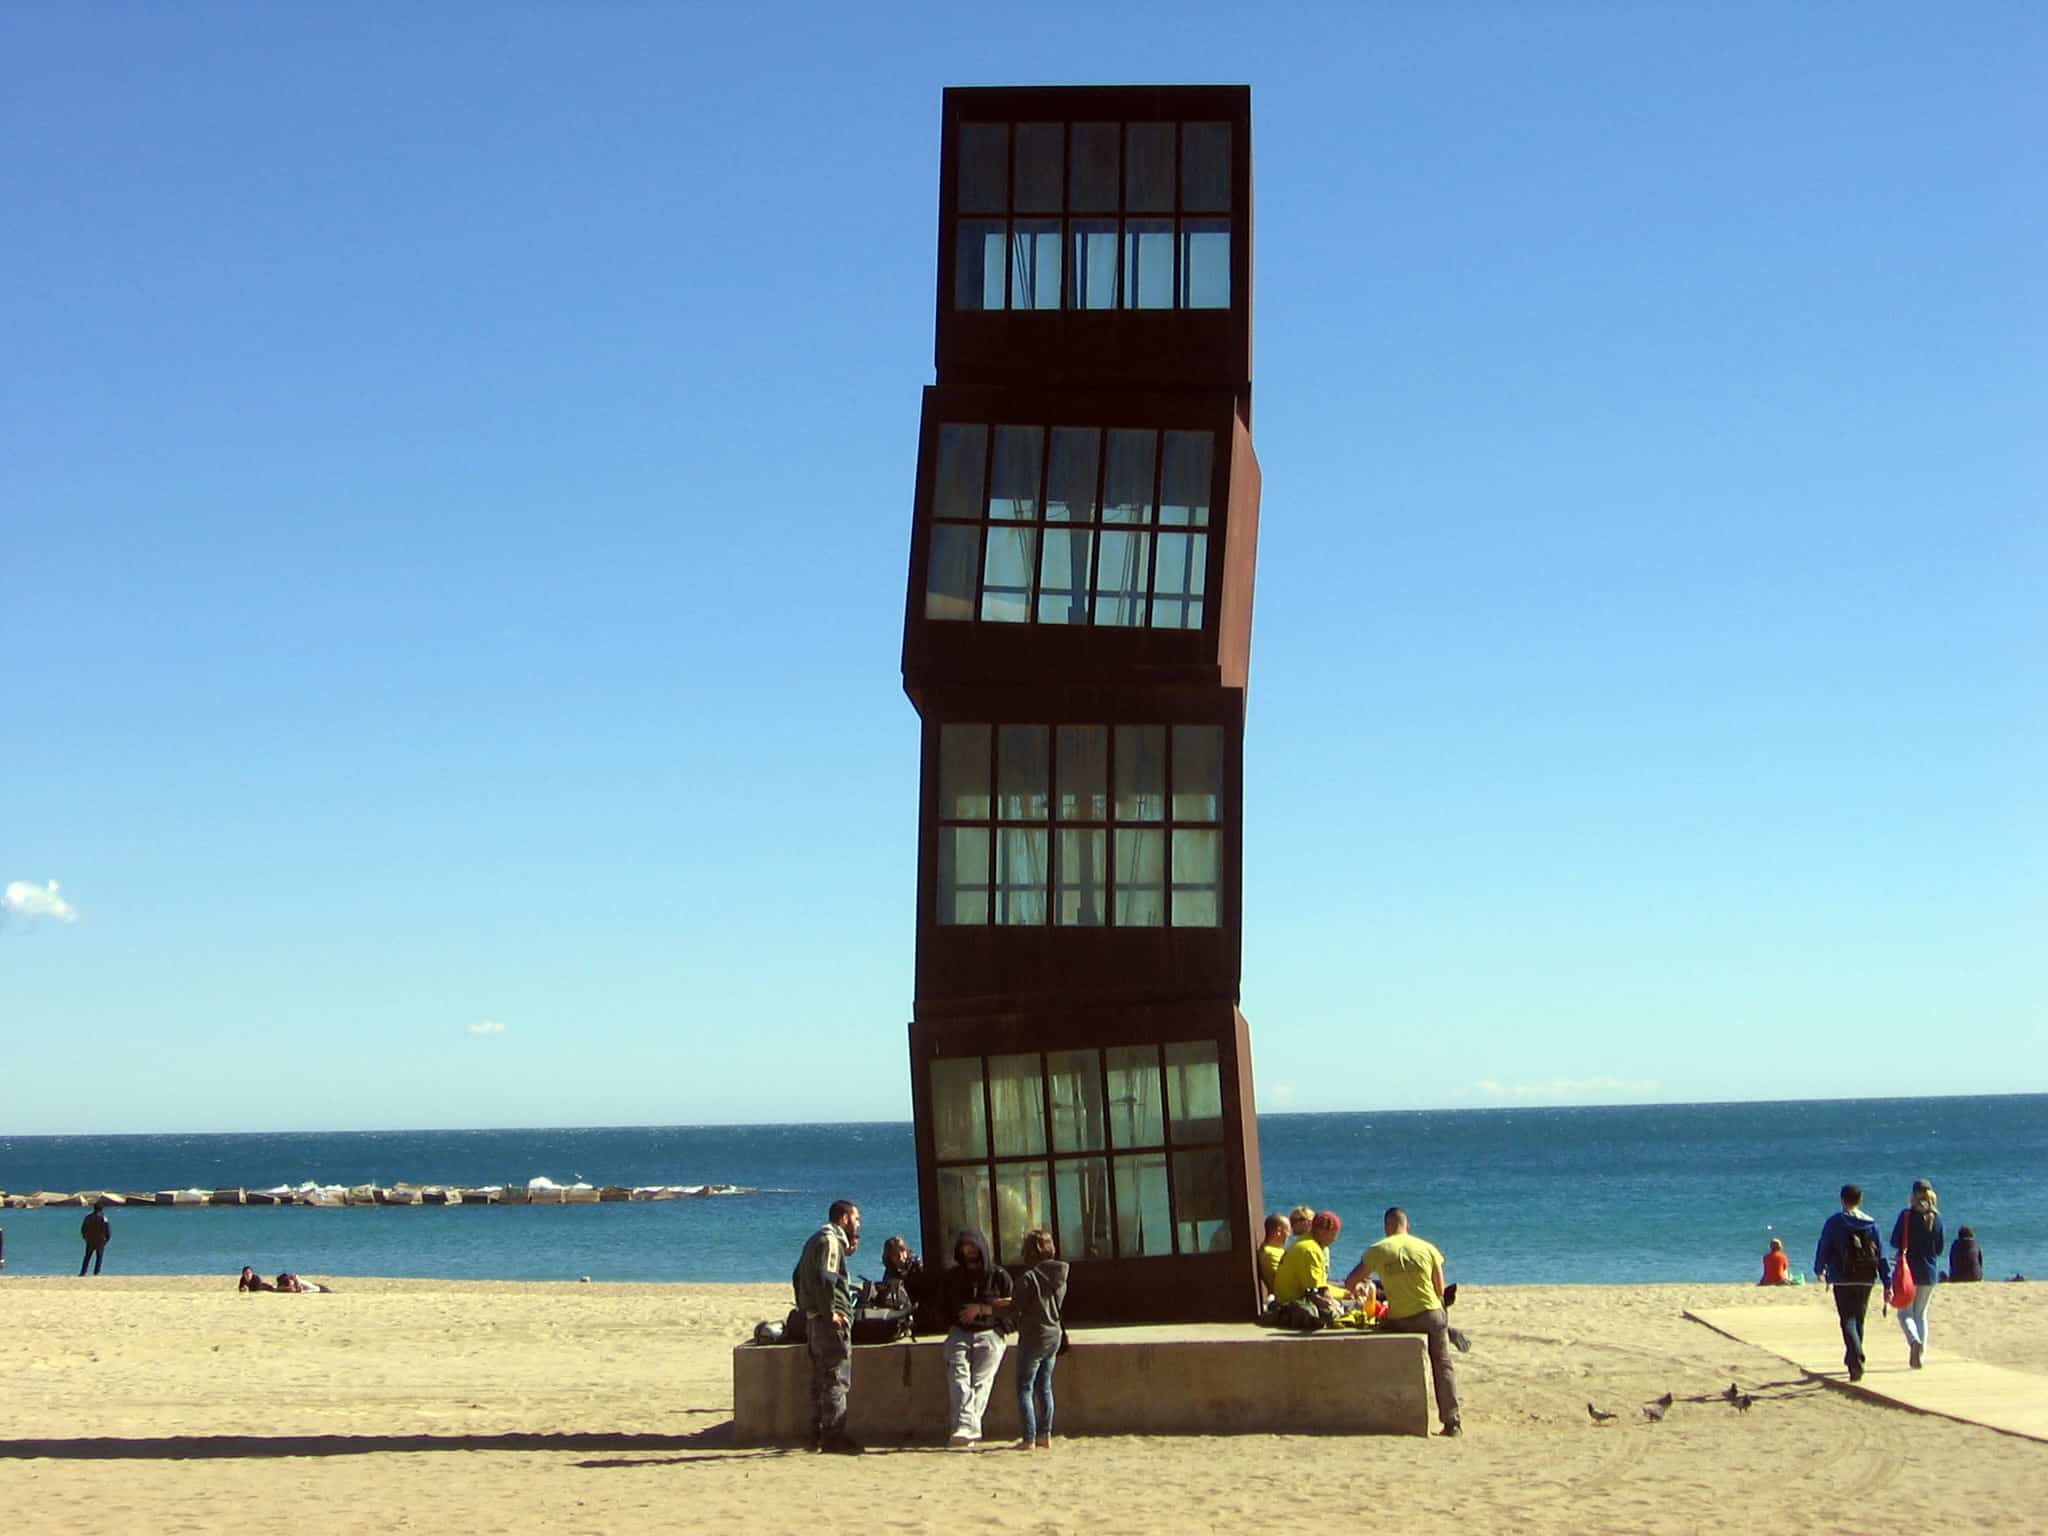 4 obras de arte en las calles de Barcelona - Travelodge Hoteles España